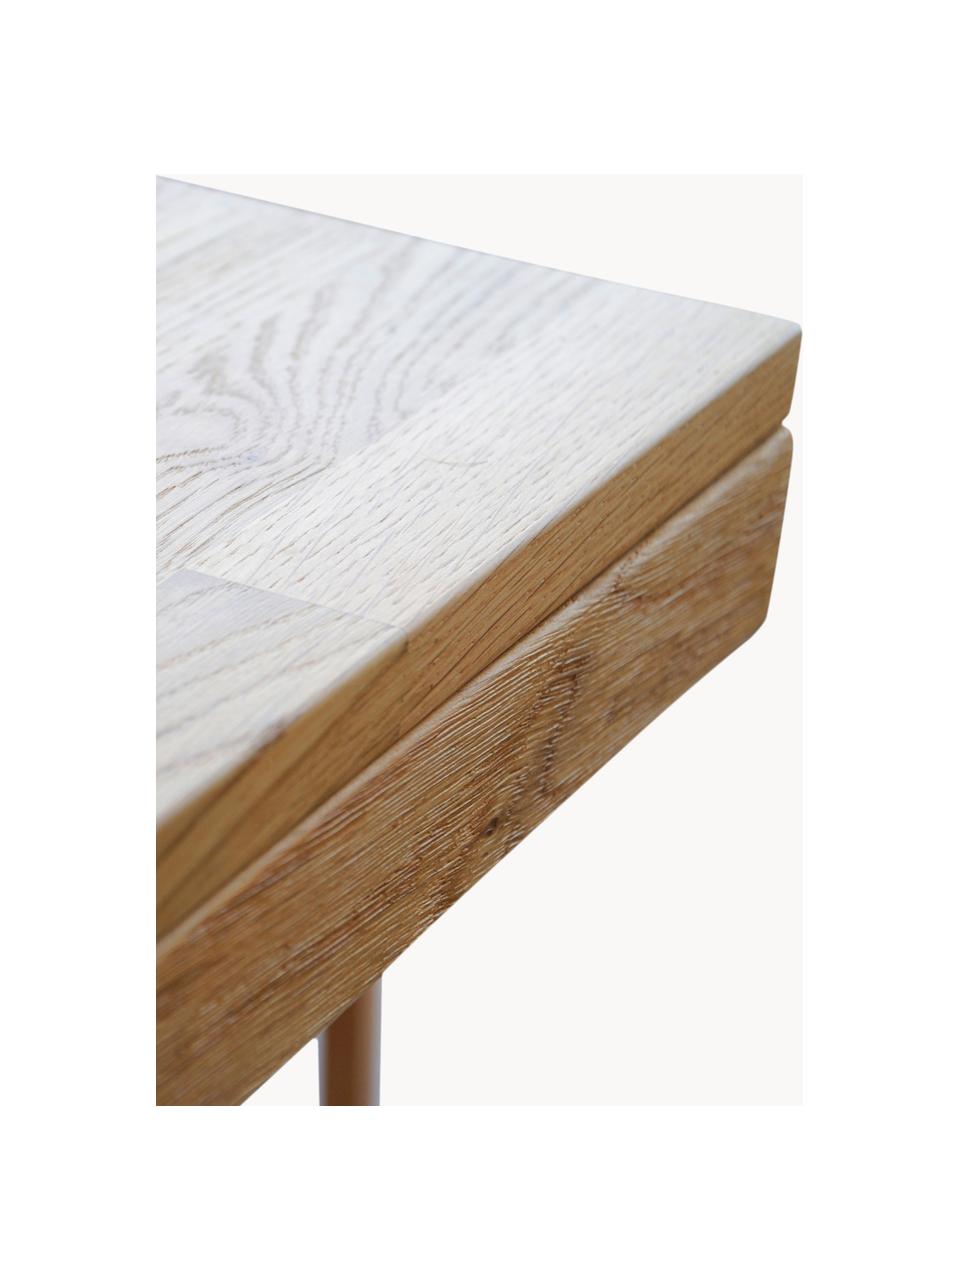 Ausziehbarer Esstisch Brooklyn aus Eichenholz, in verschiedenen Grössen, Massives Eichenholz, gebürstet und klar lackiert

Dieses Produkt wird aus nachhaltig gewonnenem, FSC®-zertifiziertem Holz gefertigt., Eichenholz, B 170/220 x T 95 cm